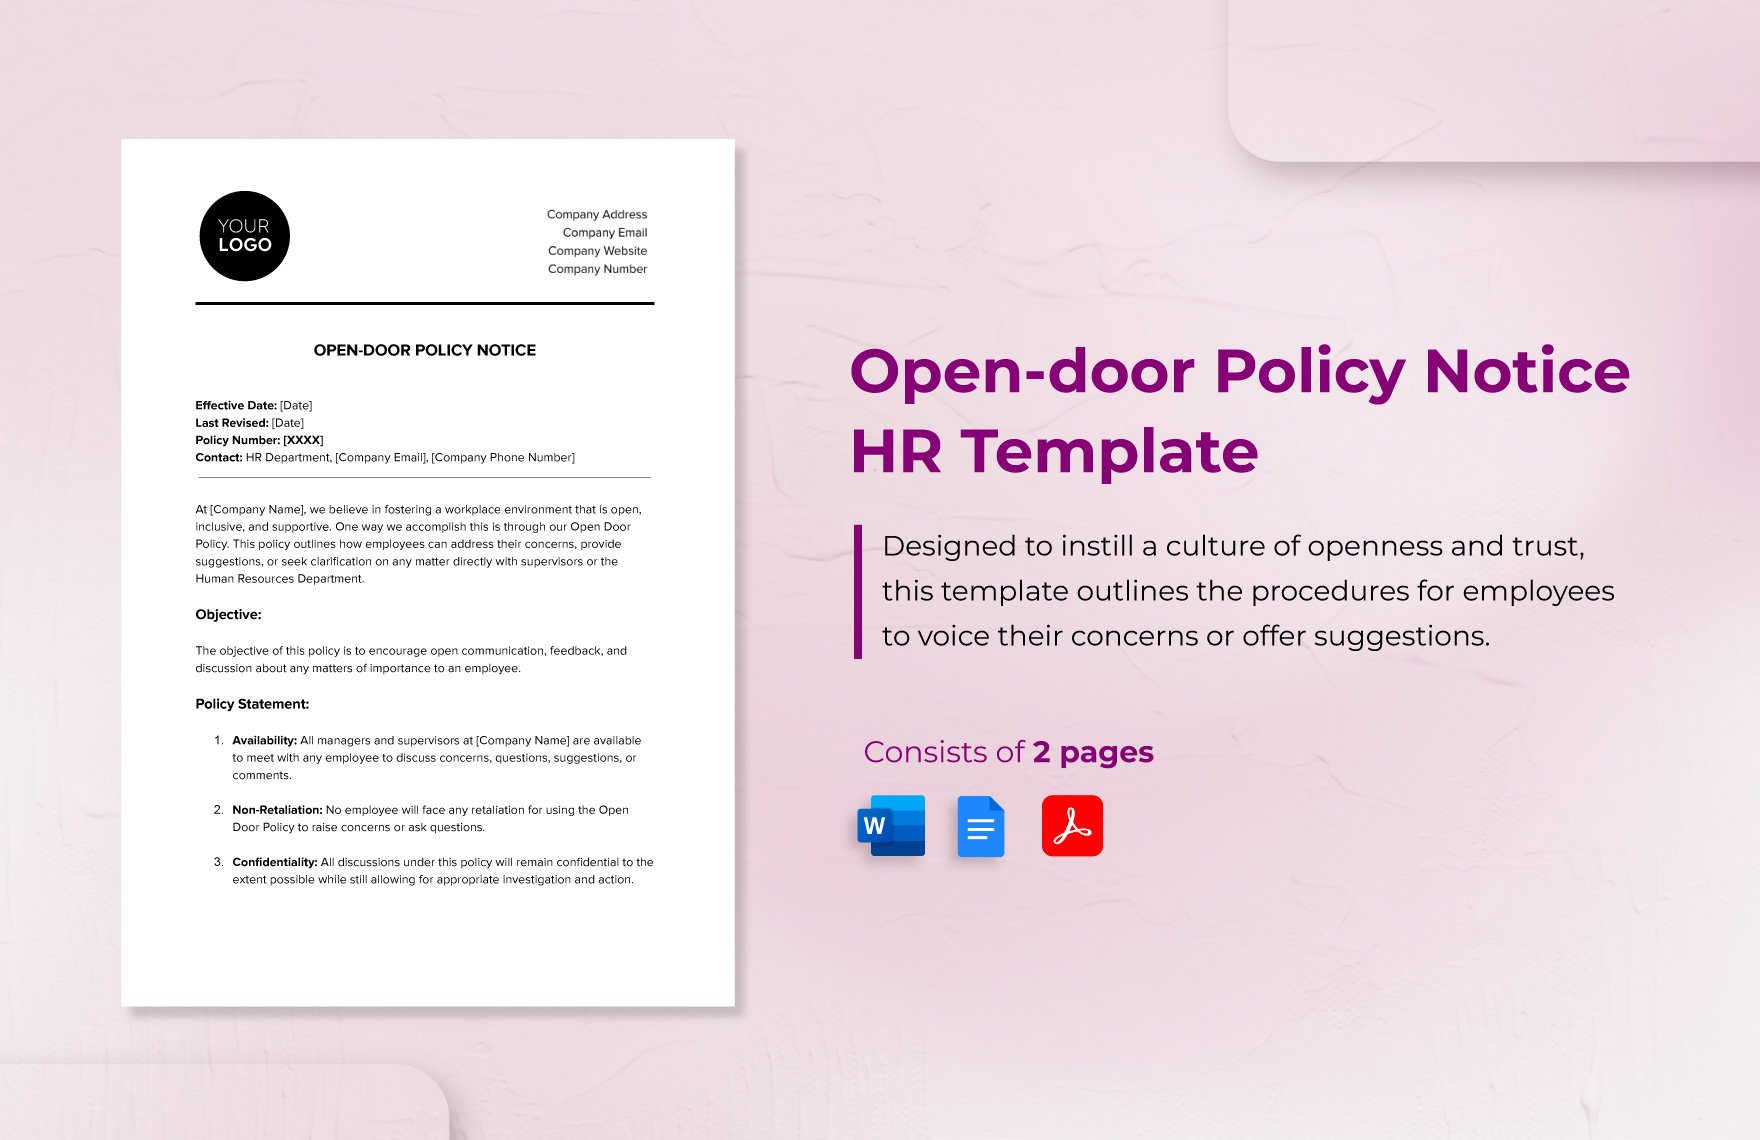 Open-door Policy Notice HR Template